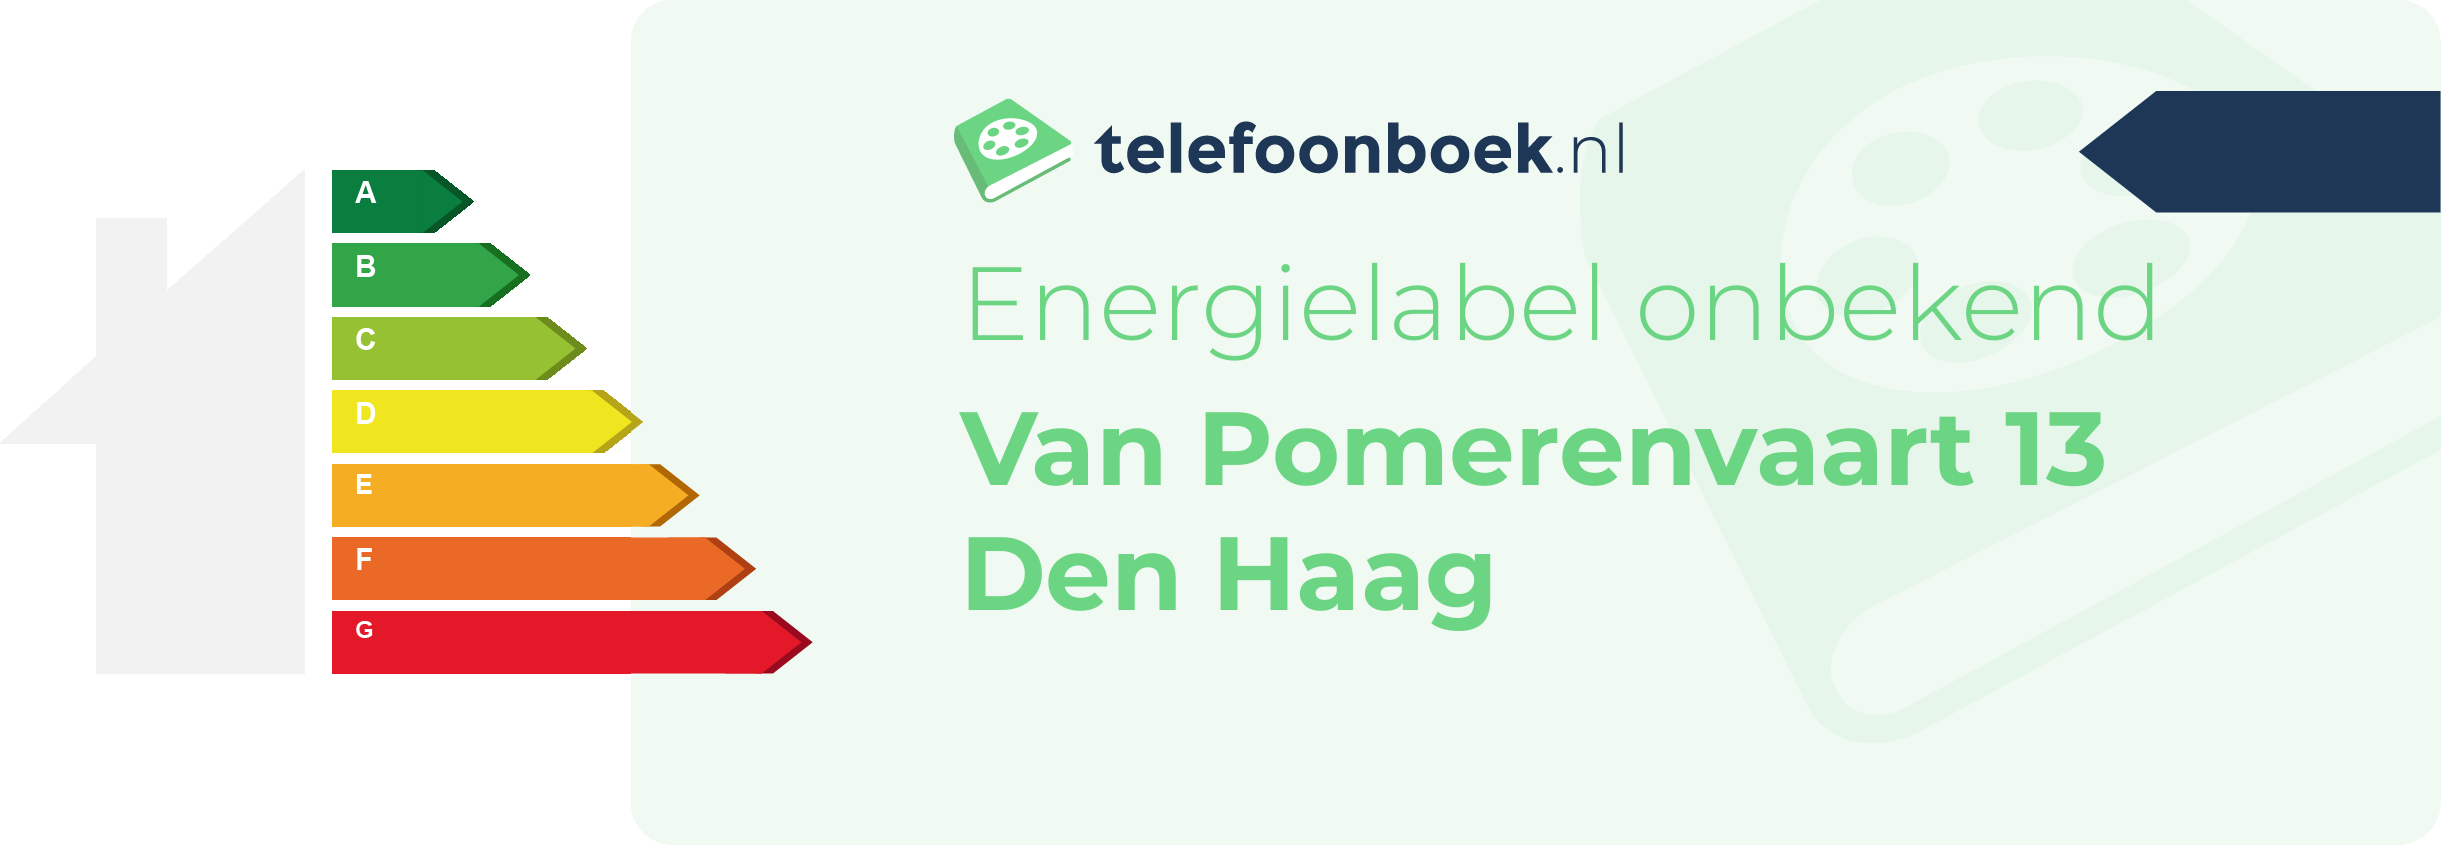 Energielabel Van Pomerenvaart 13 Den Haag